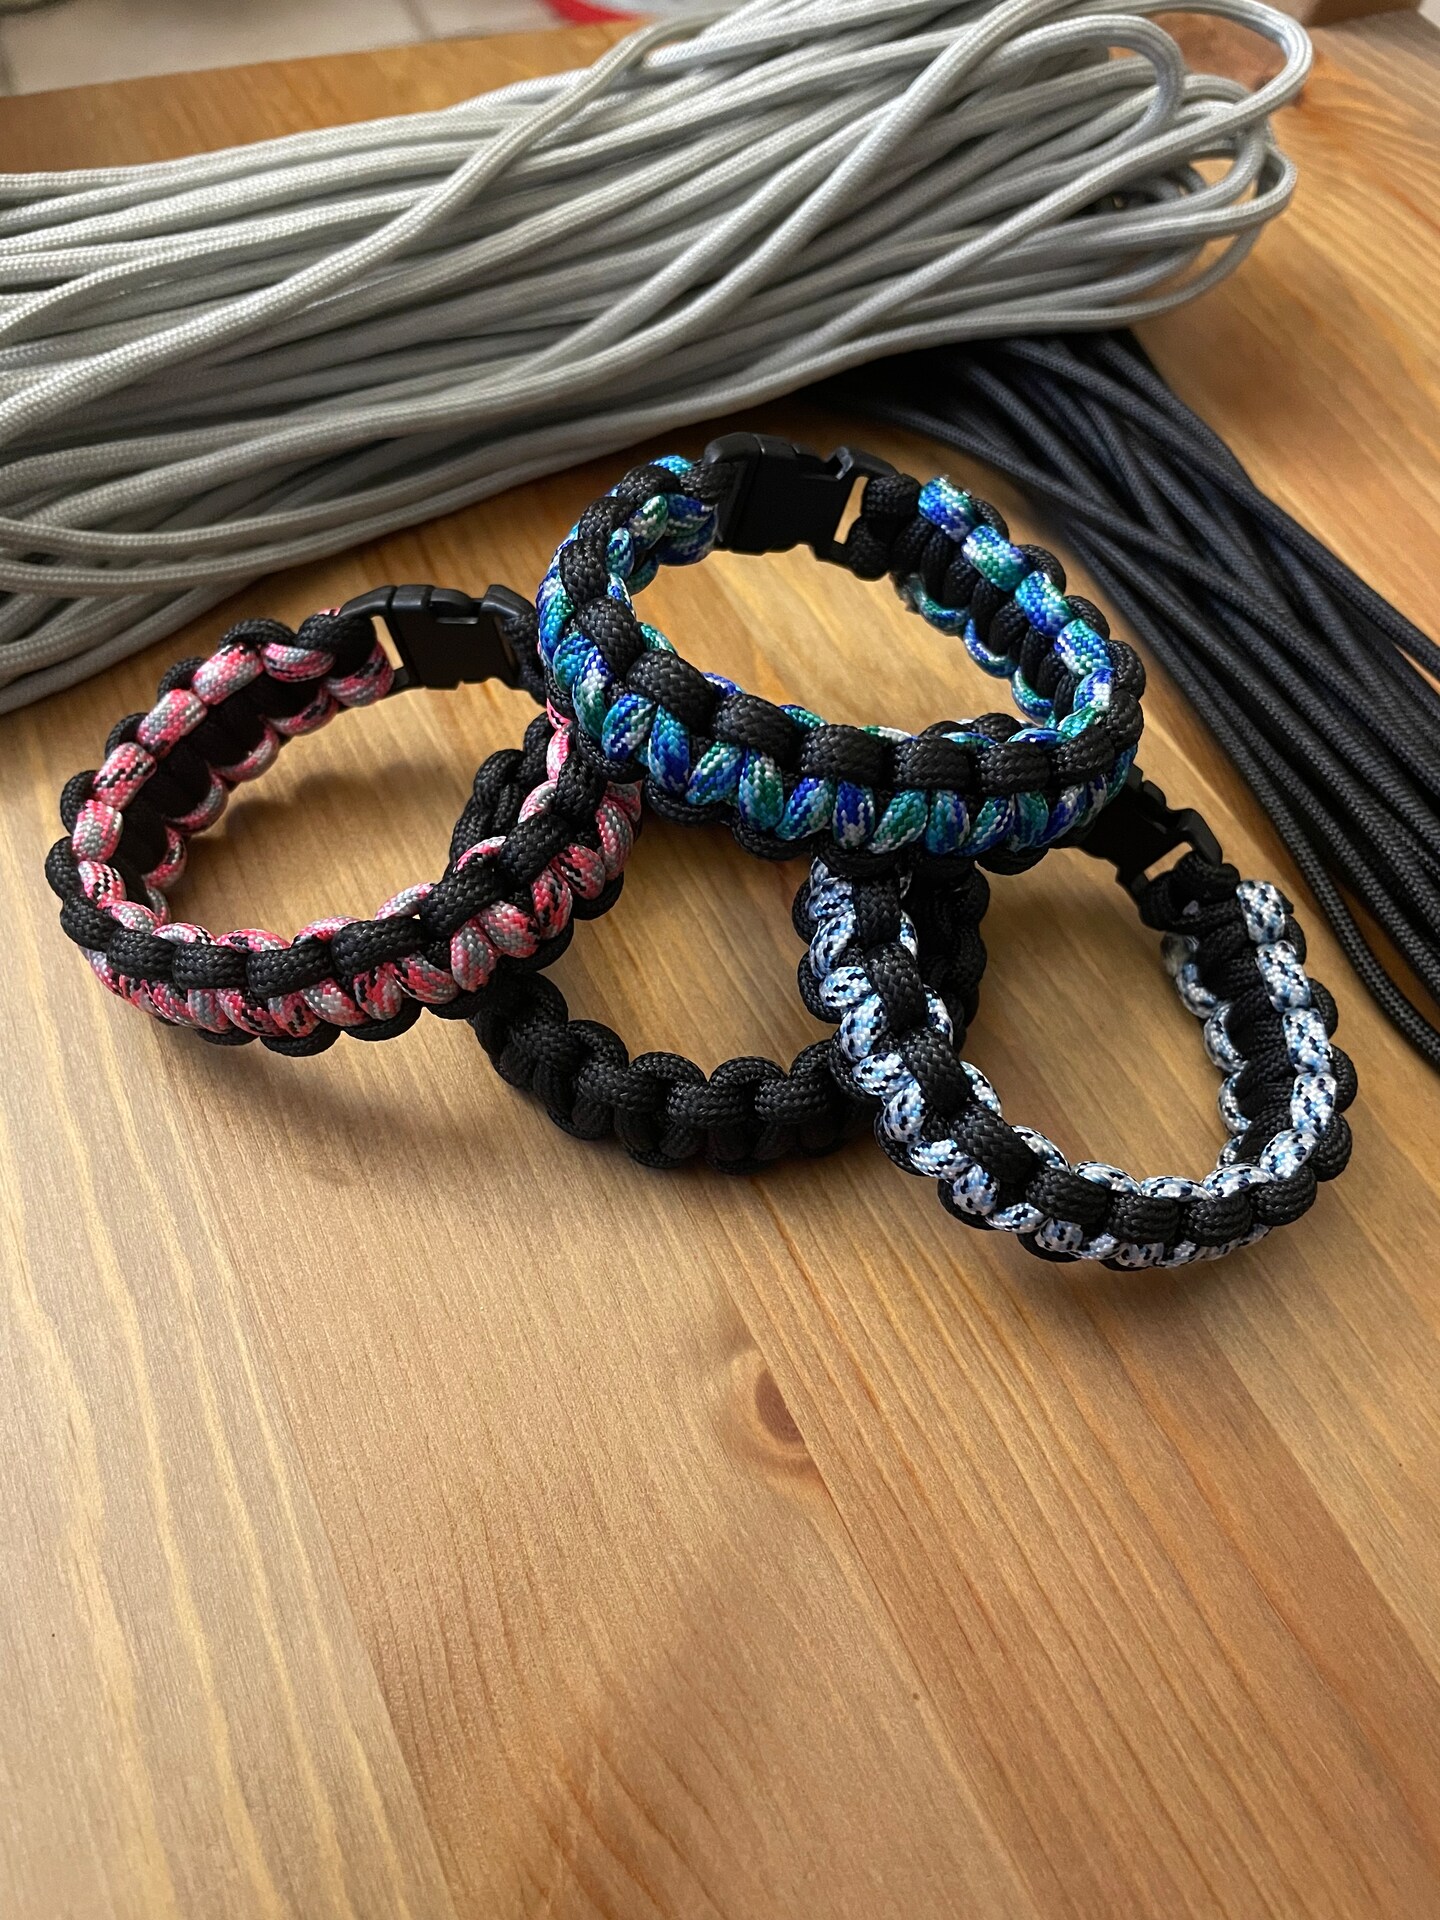 Amazon.com: Scout Paracord Cobra Knot Survival Bracelet : Handmade Products